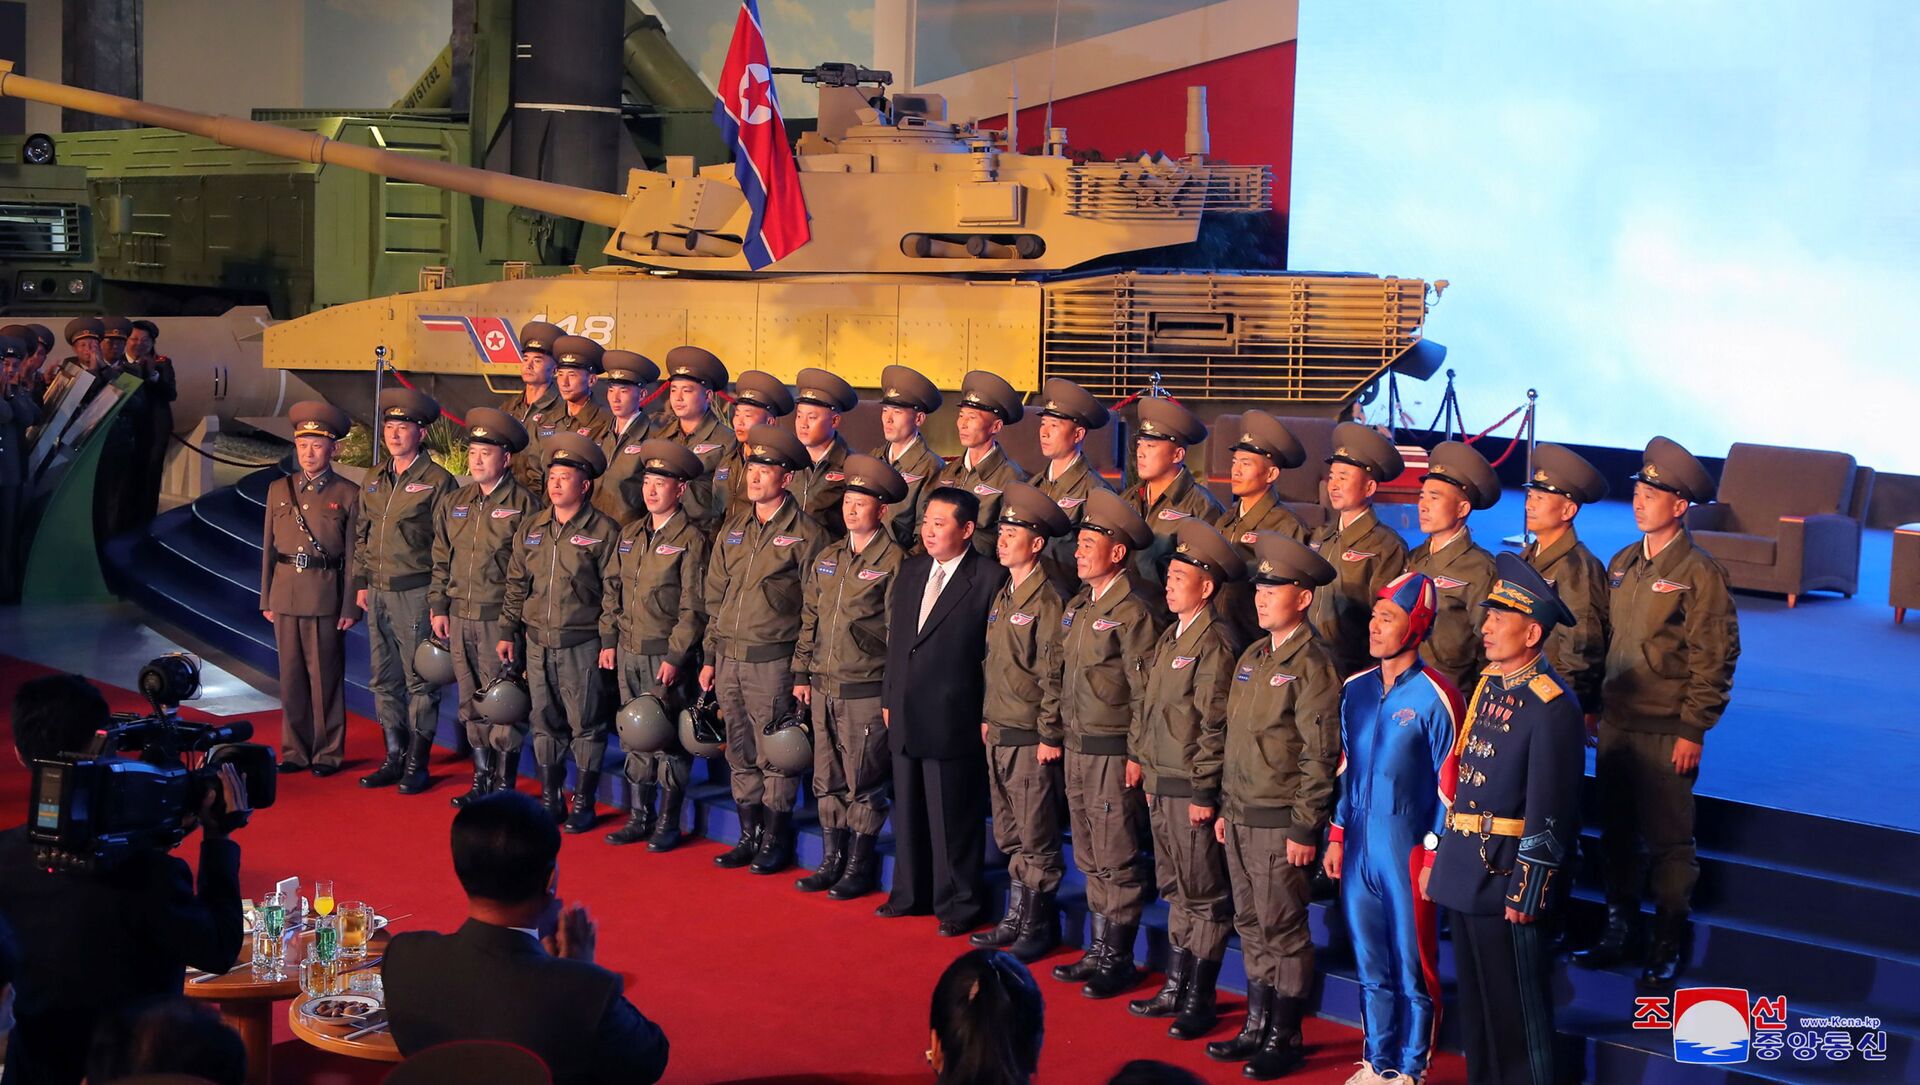 زعيم كوريا الشمالية كيم جونغ أون يتحدث إلى المسؤولين بجوار الأسلحة والمركبات العسكرية المعروضة، بما في ذلك الصواريخ الباليستية العابرة للقارات (ICBM)، في معرض تطوير الدفاع، في بيونغ يانغ، كوريا الشمالية، 12 أكتوبر 2021 . - سبوتنيك عربي, 1920, 14.10.2021